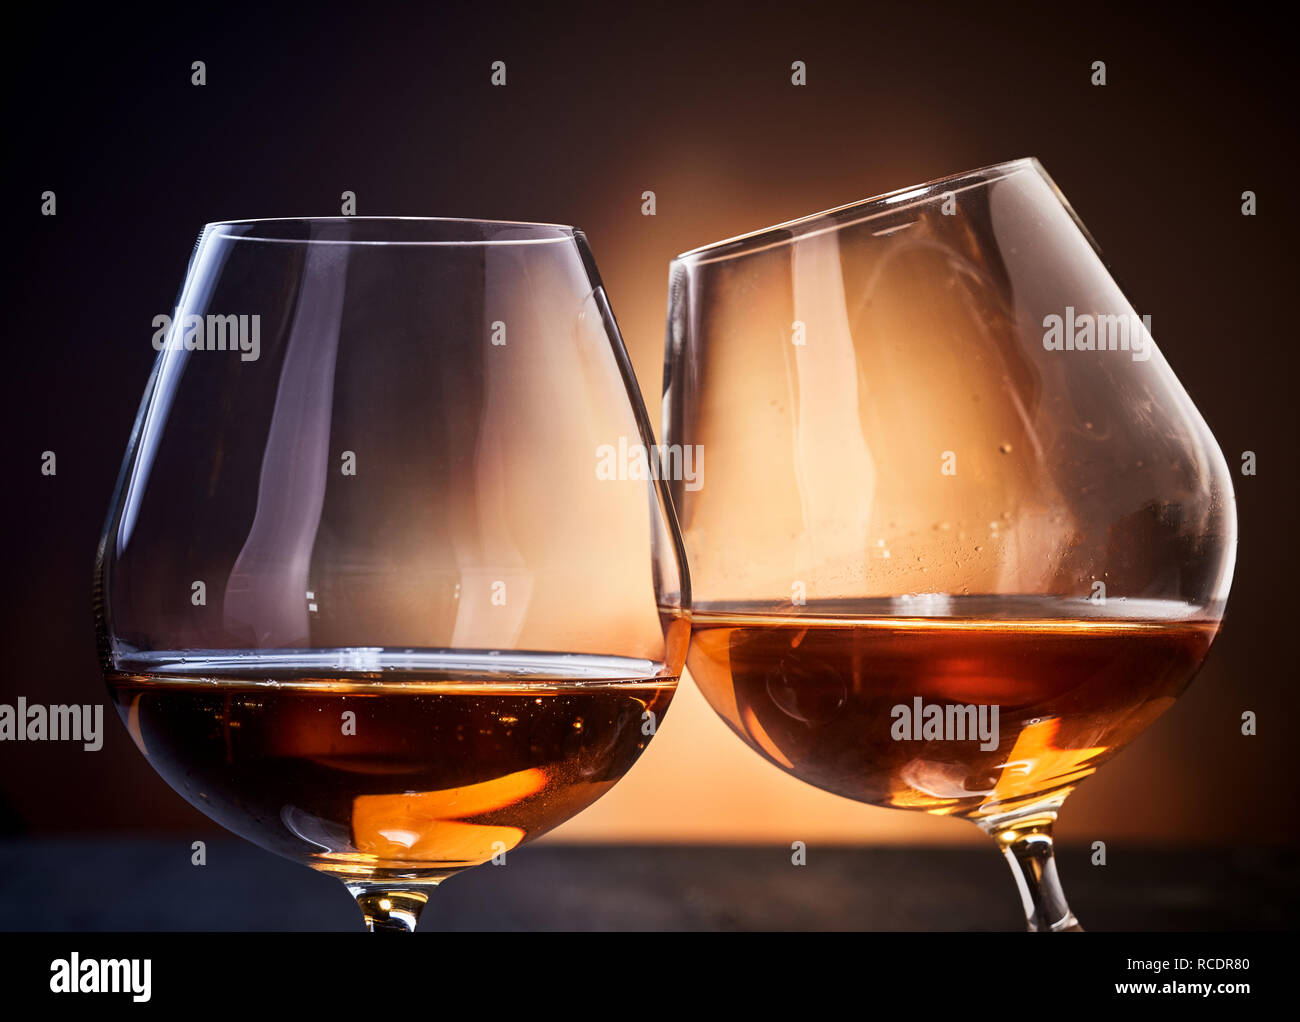 Zwei Gläser cognac Klirren in close-up gegen dunkelbraunen Hintergrund Stockfoto